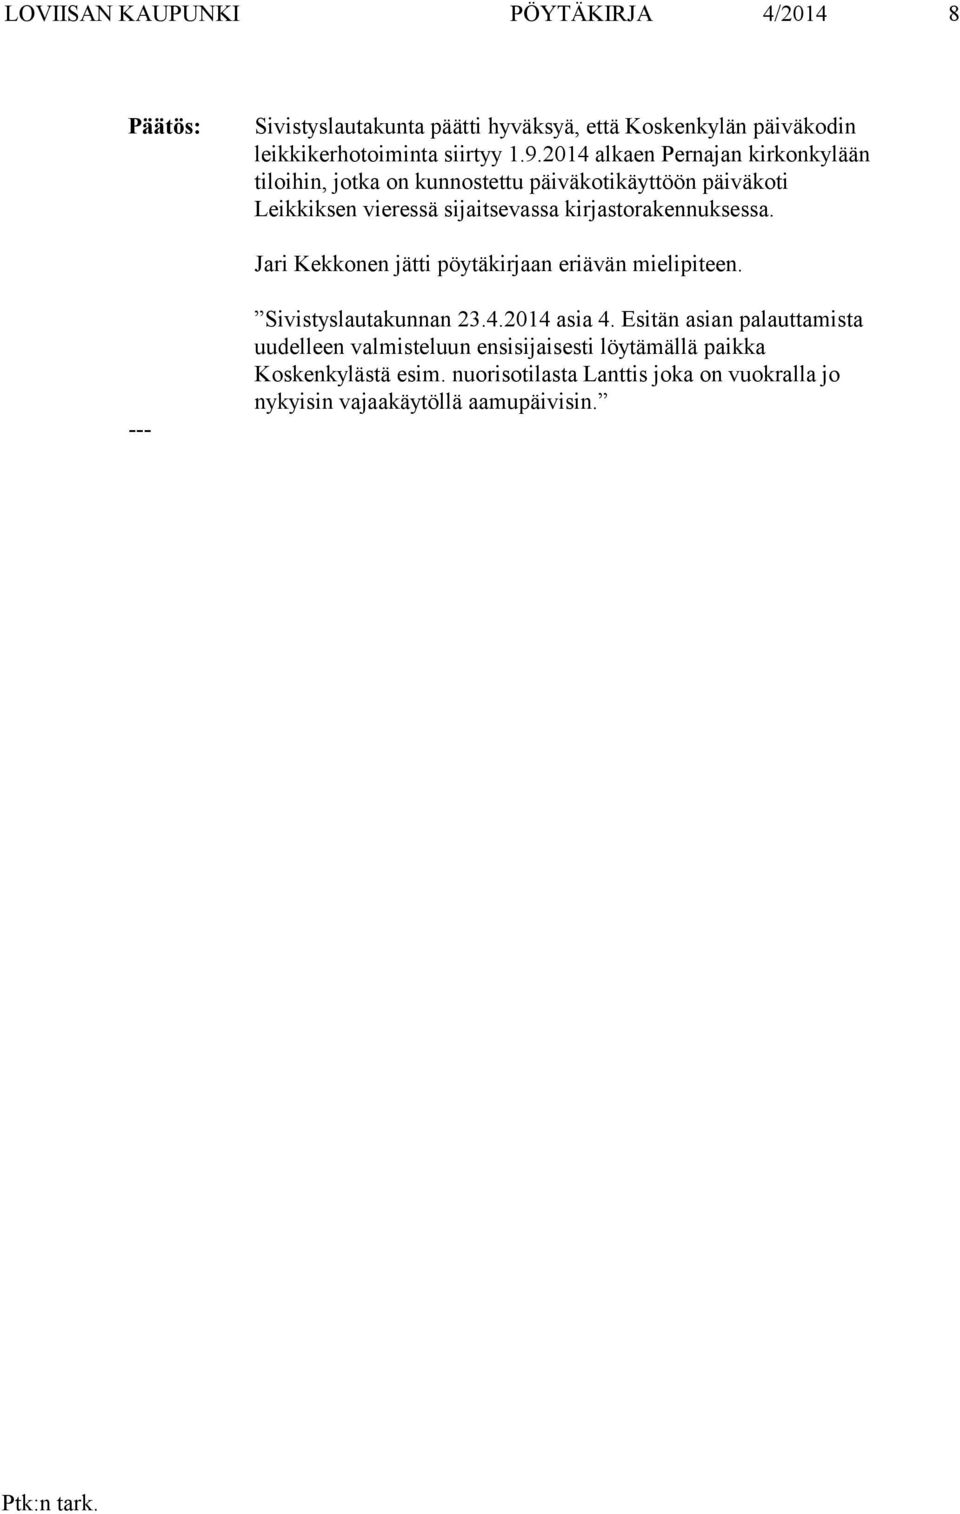 kirjastorakennuksessa. Jari Kekkonen jätti pöytäkirjaan eriävän mielipiteen. Sivistyslautakunnan 23.4.2014 asia 4.